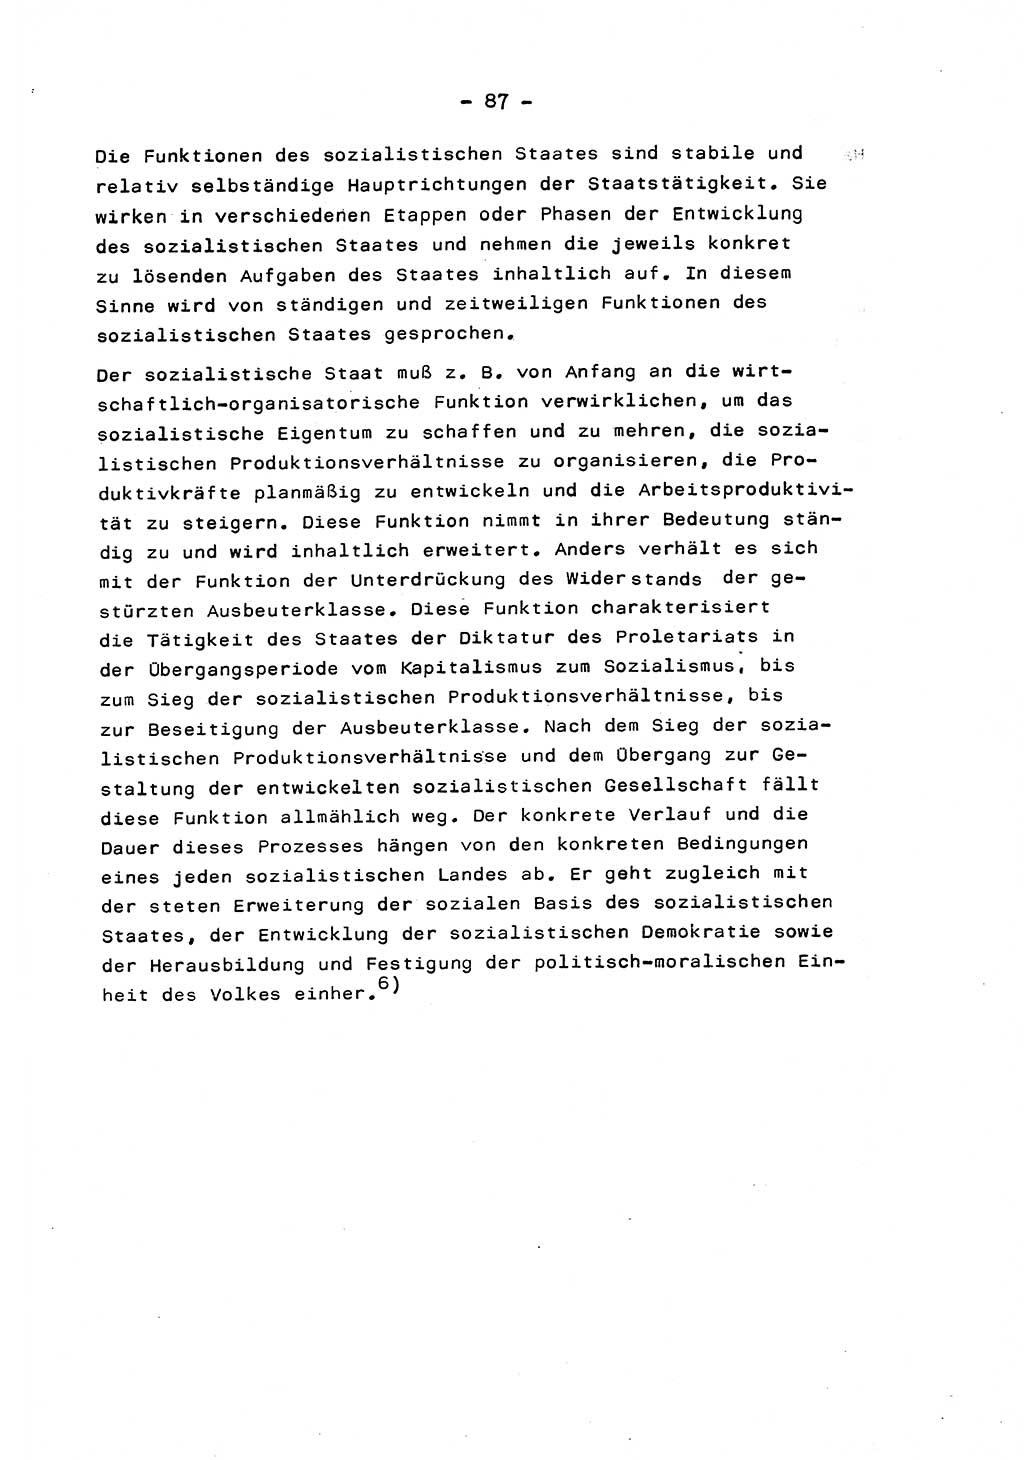 Marxistisch-leninistische Staats- und Rechtstheorie [Deutsche Demokratische Republik (DDR)] 1975, Seite 87 (ML St.-R.-Th. DDR 1975, S. 87)